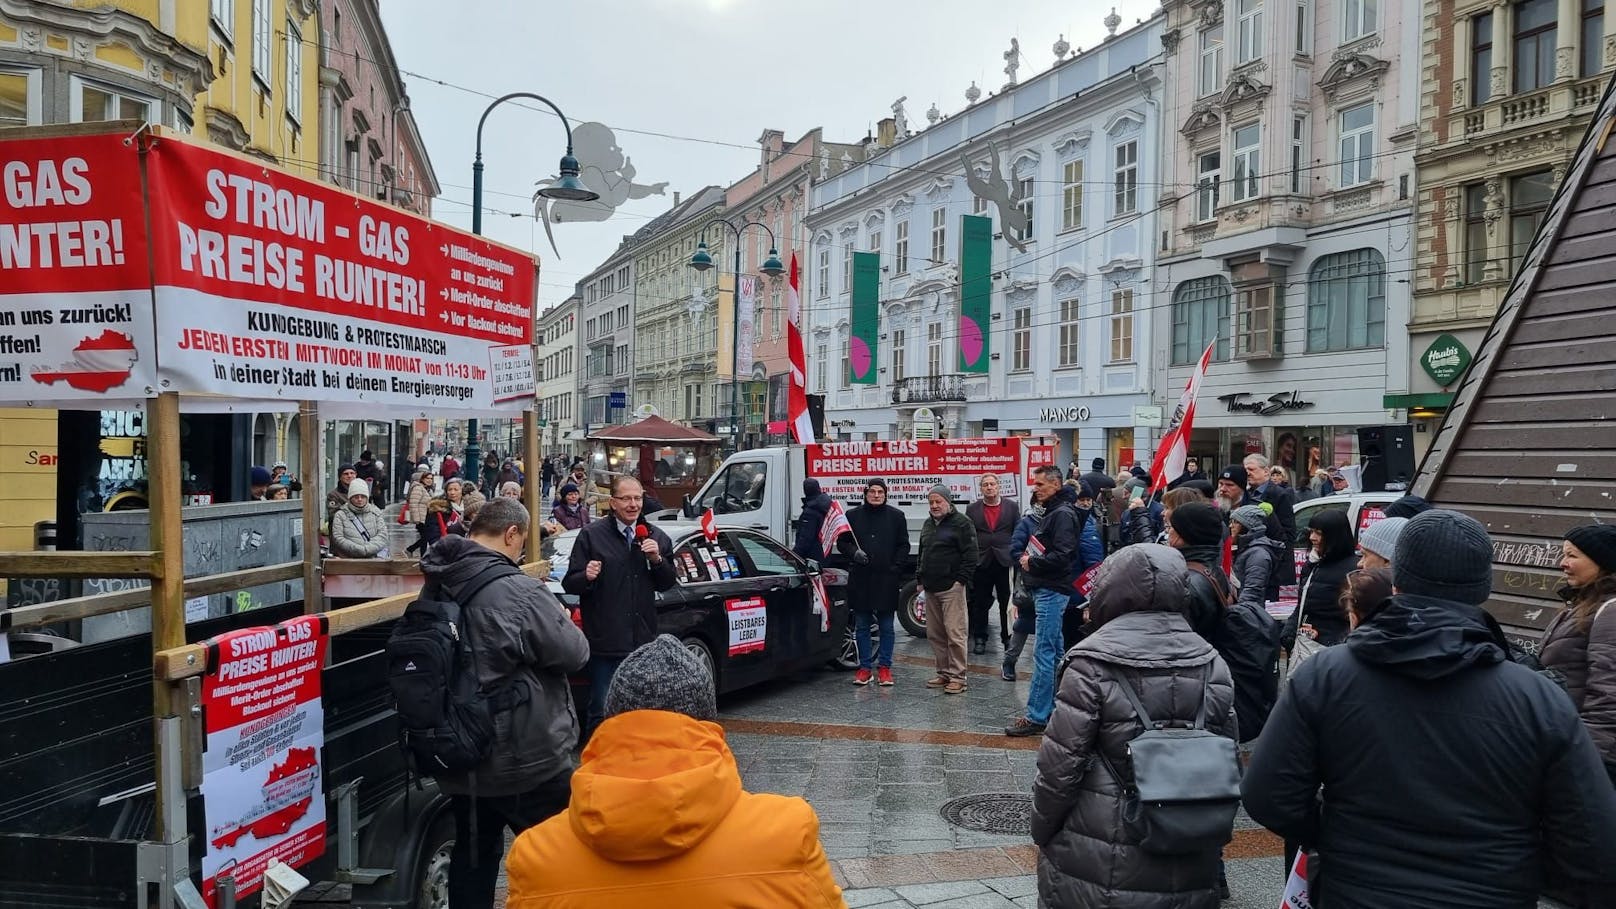 Rund 40 Teilnehmer versammelten sich am Taubenmarkt in der Linzer Innenstadt. Sie demonstrierten gegen die hohen Strom- und Gas-Preise.